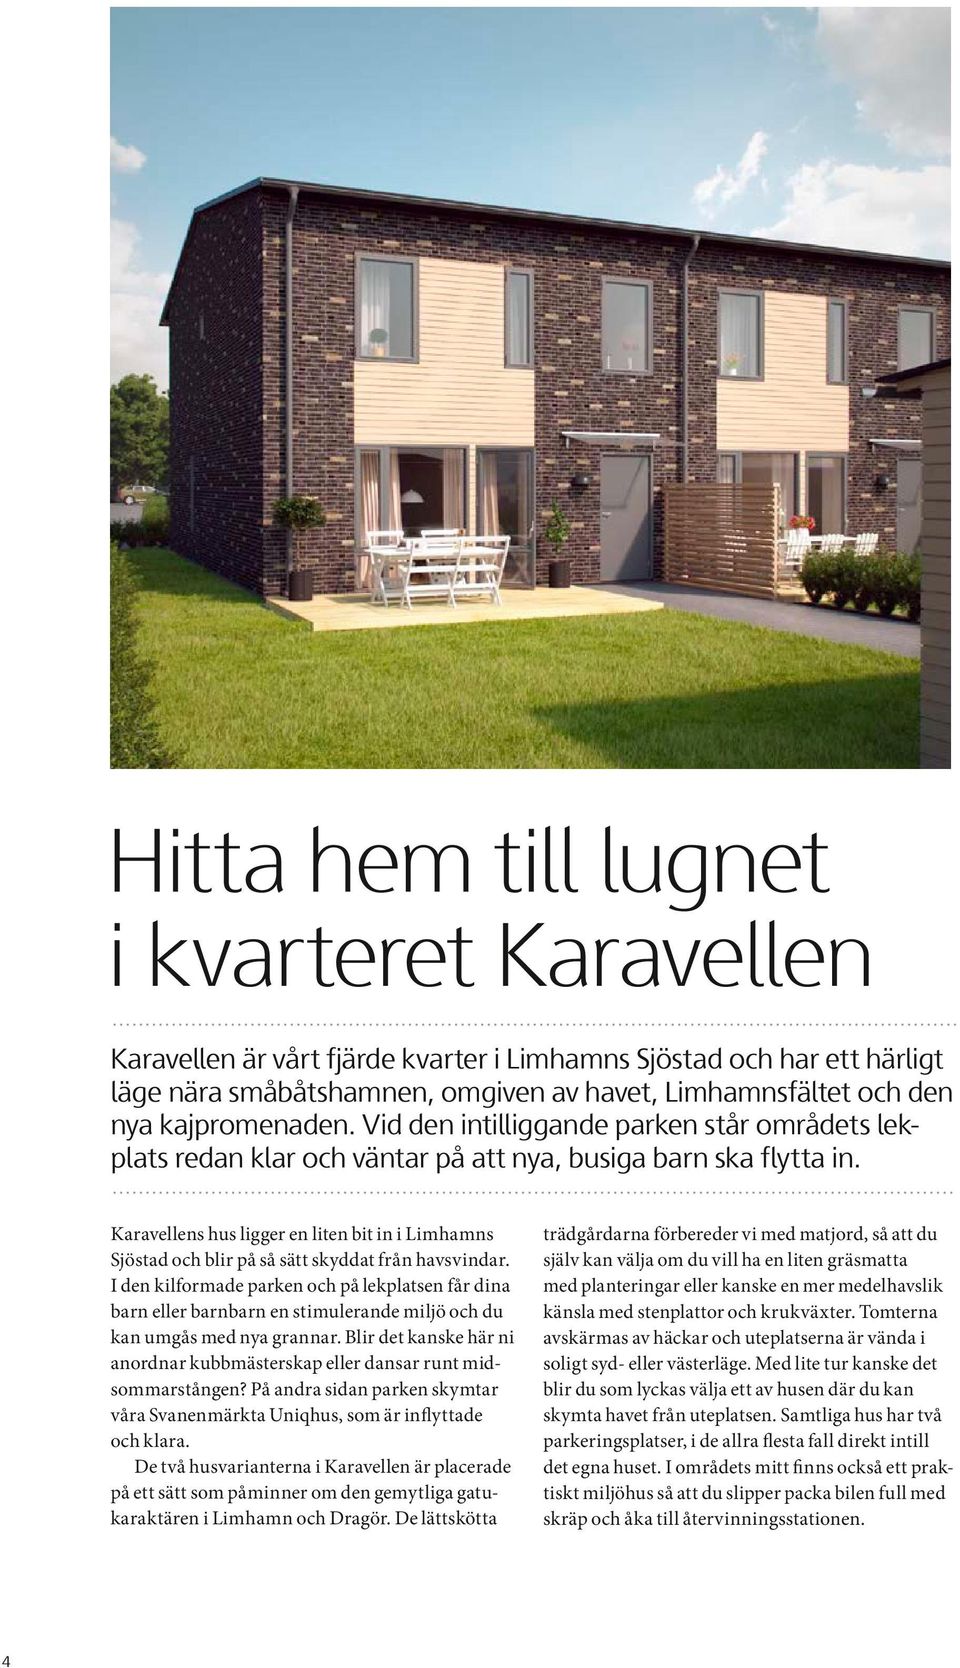 Karavellens hus ligger en liten bit in i Limhamns Sjöstad och blir på så sätt skyddat från havsvindar.